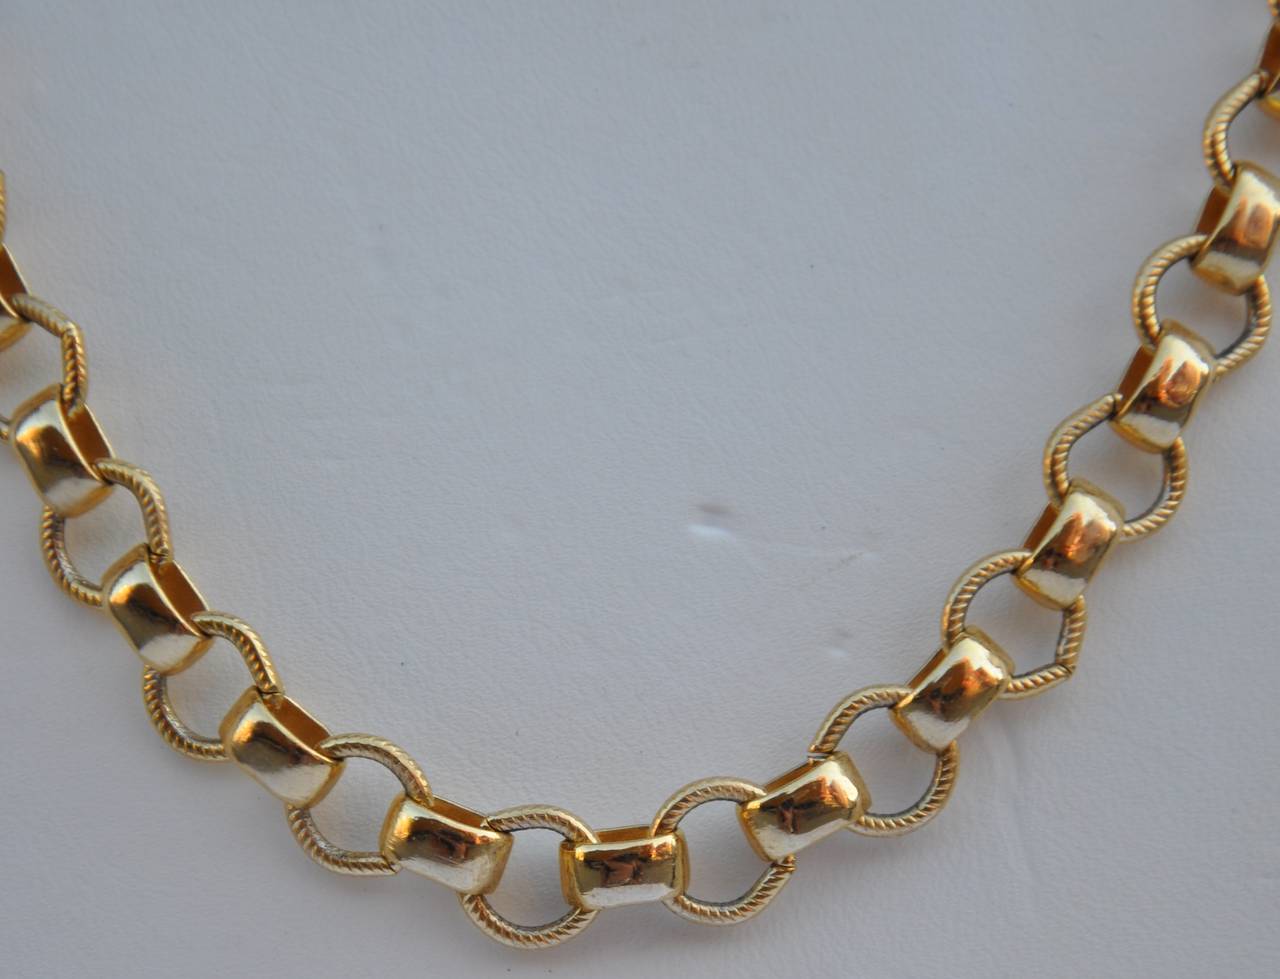 Le collier à maillons de style européen en vermeil doré mesure 18